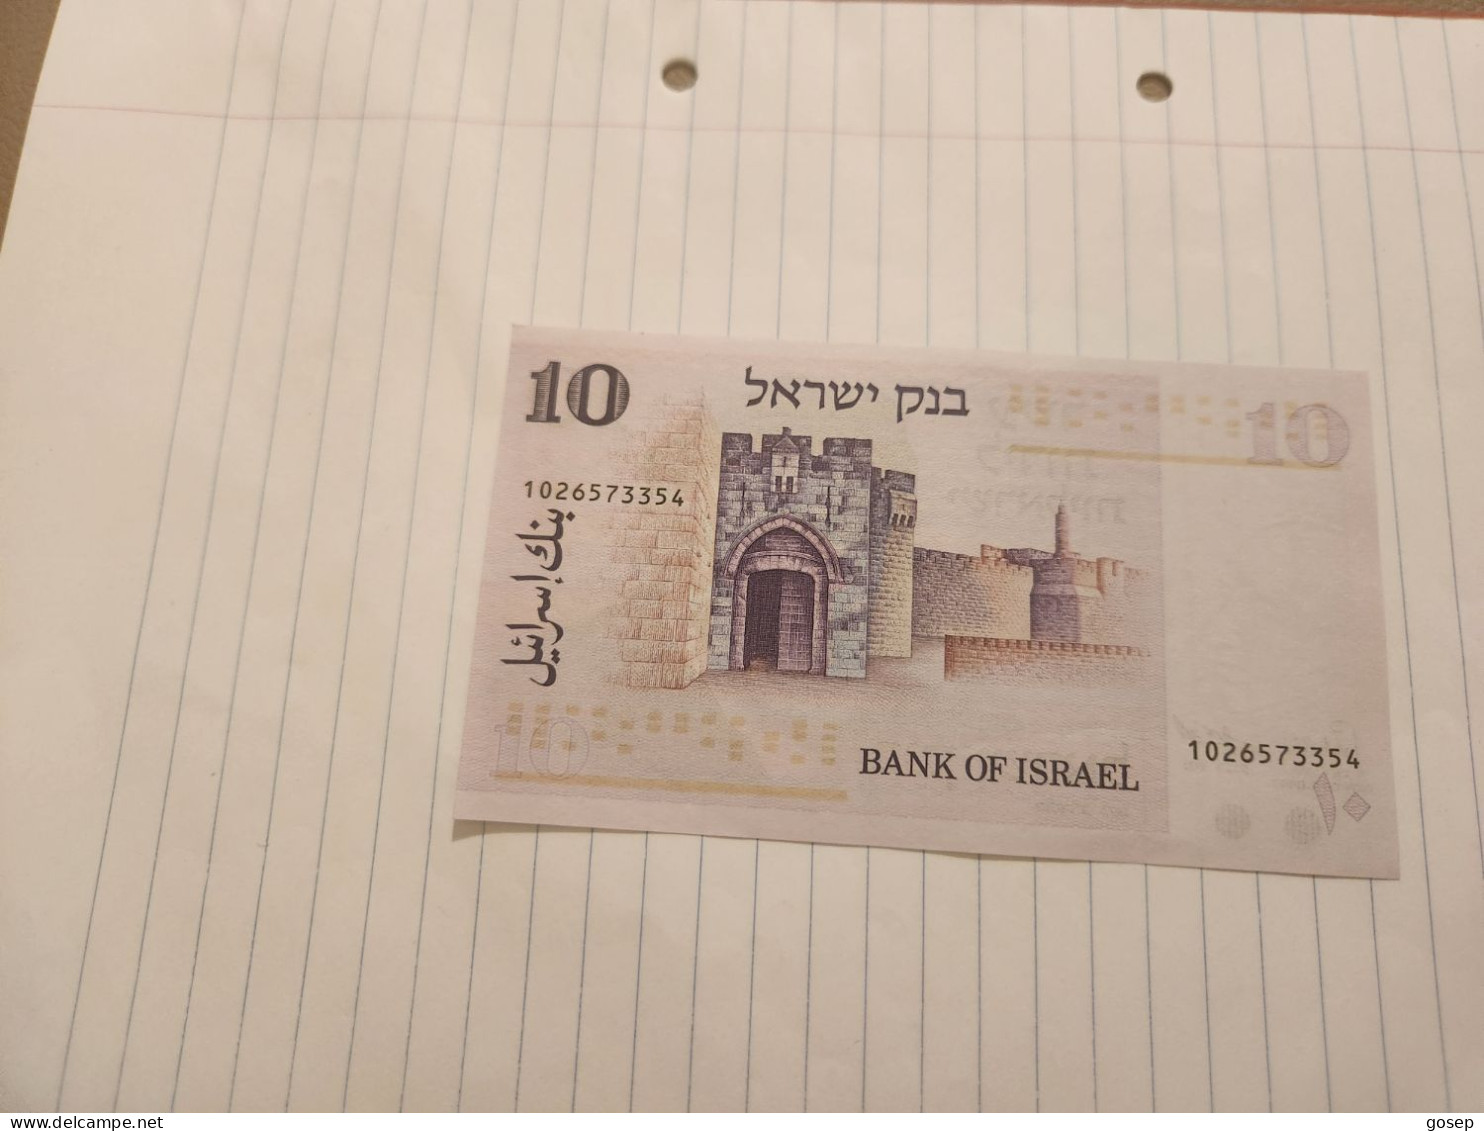 Israel-10 LIROT-MOSES MONTEFIORE-(1973)-(BLACK-NUMBER)-(352)-(1026573354)-VERY GOOD-bank Note - Israël